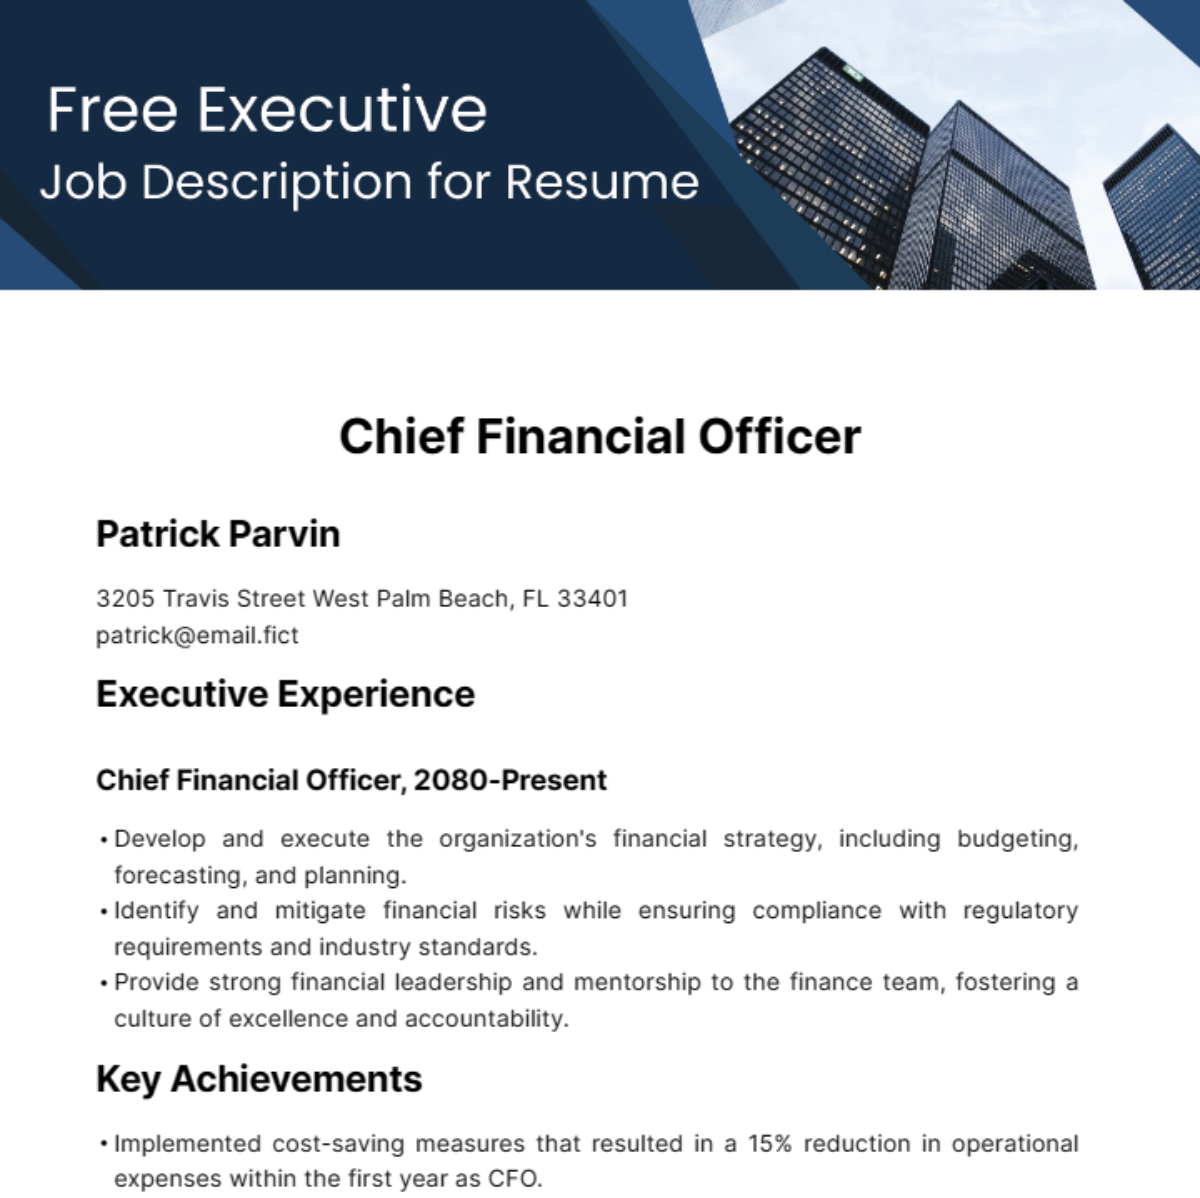 Executive Job Description for Resume Template